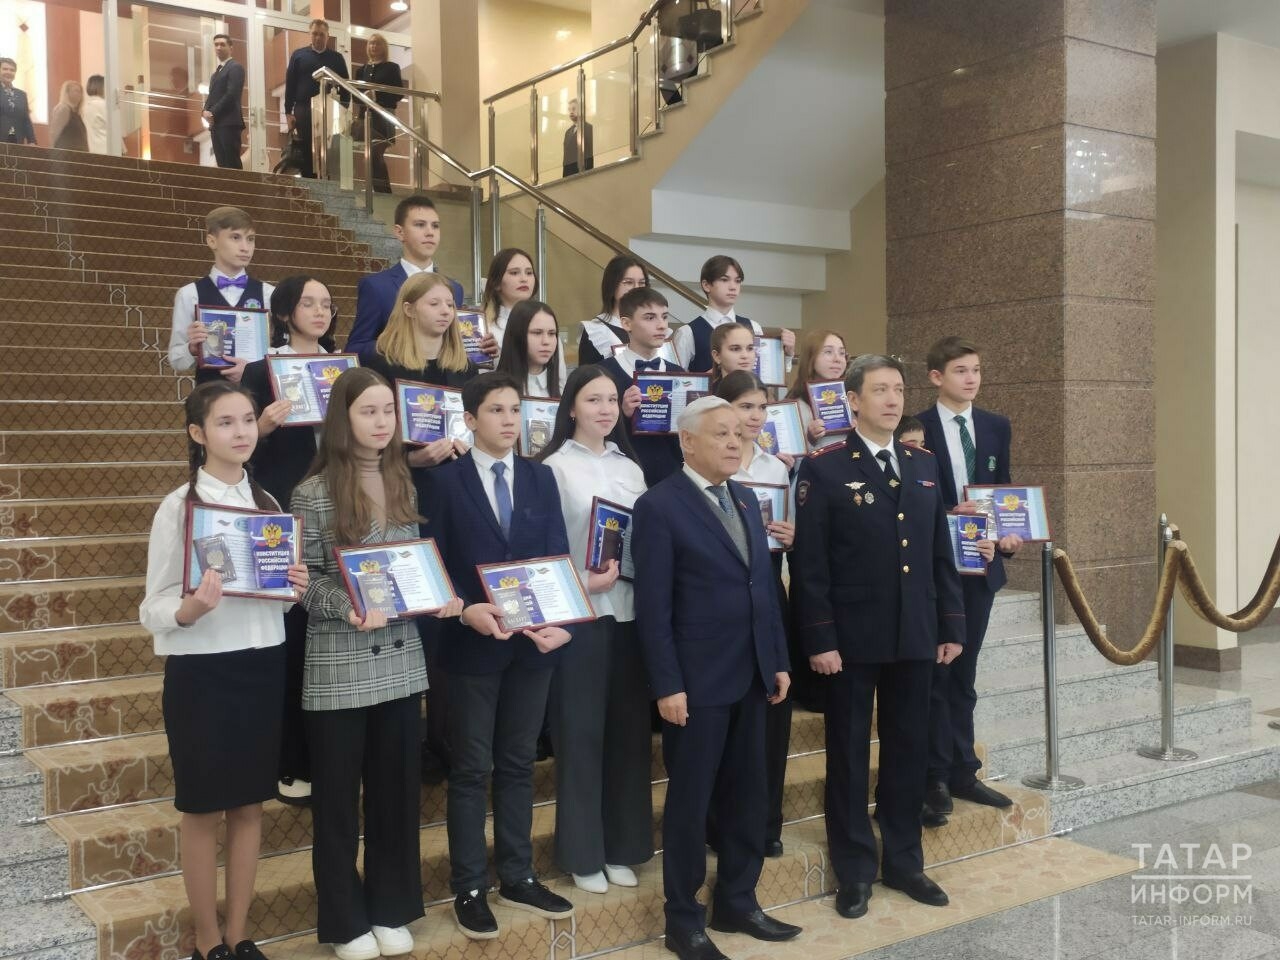 «Вы вступаете в новую большую жизнь»: Мухаметшин вручил паспорта 20 юным татарстанцам